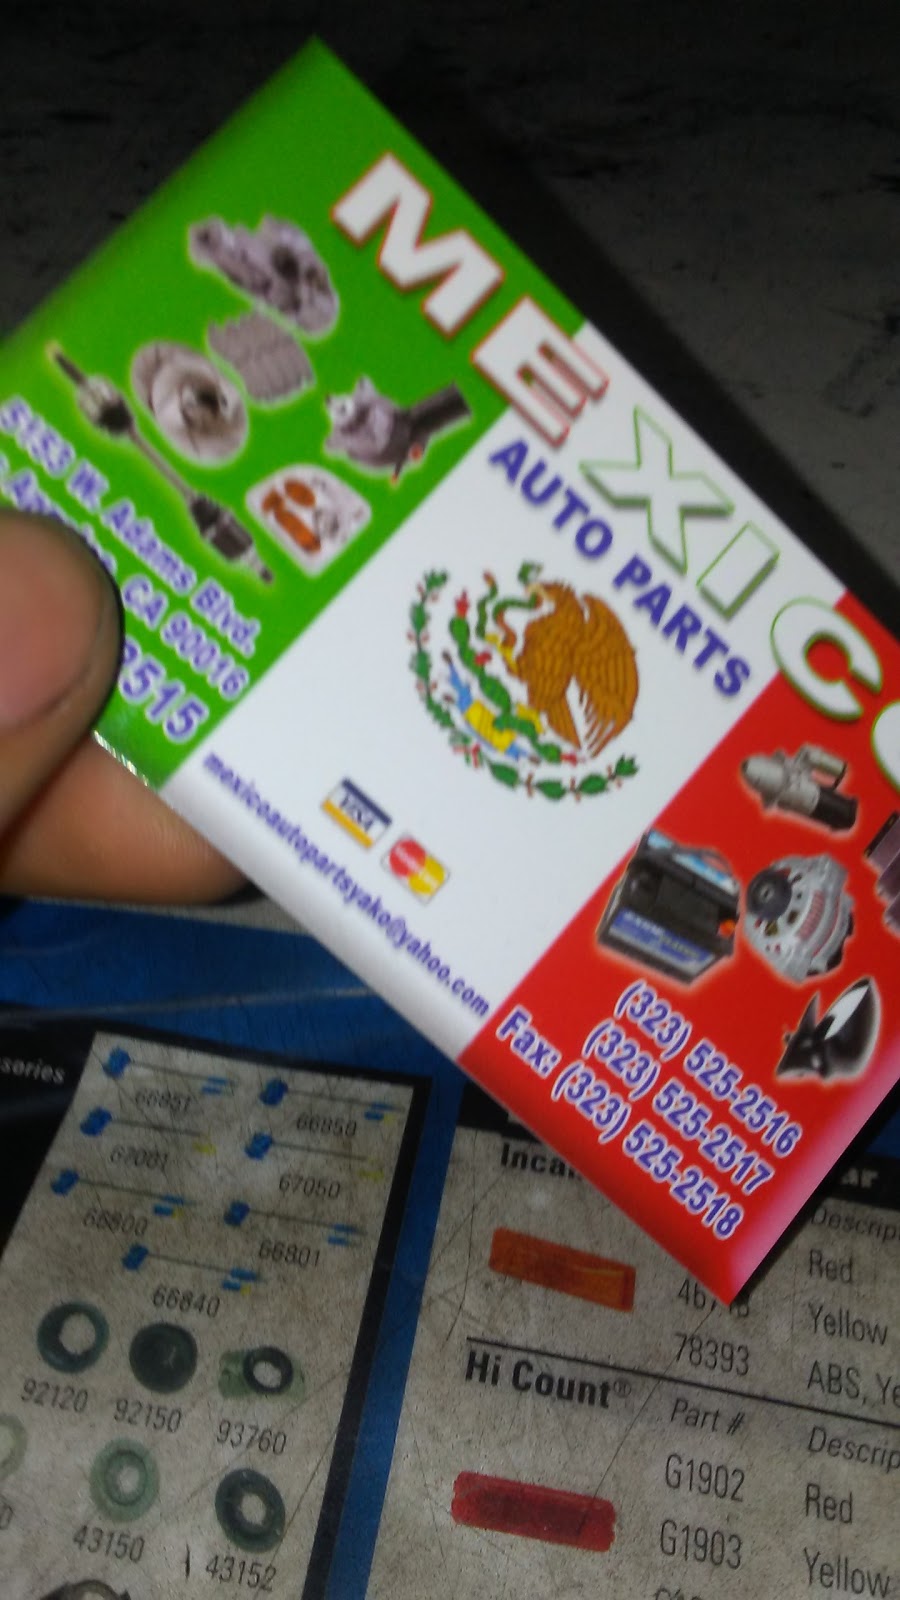 Mexico Auto Parts | 5153 W Adams Blvd, Los Angeles, CA 90016 | Phone: (323) 525-2515